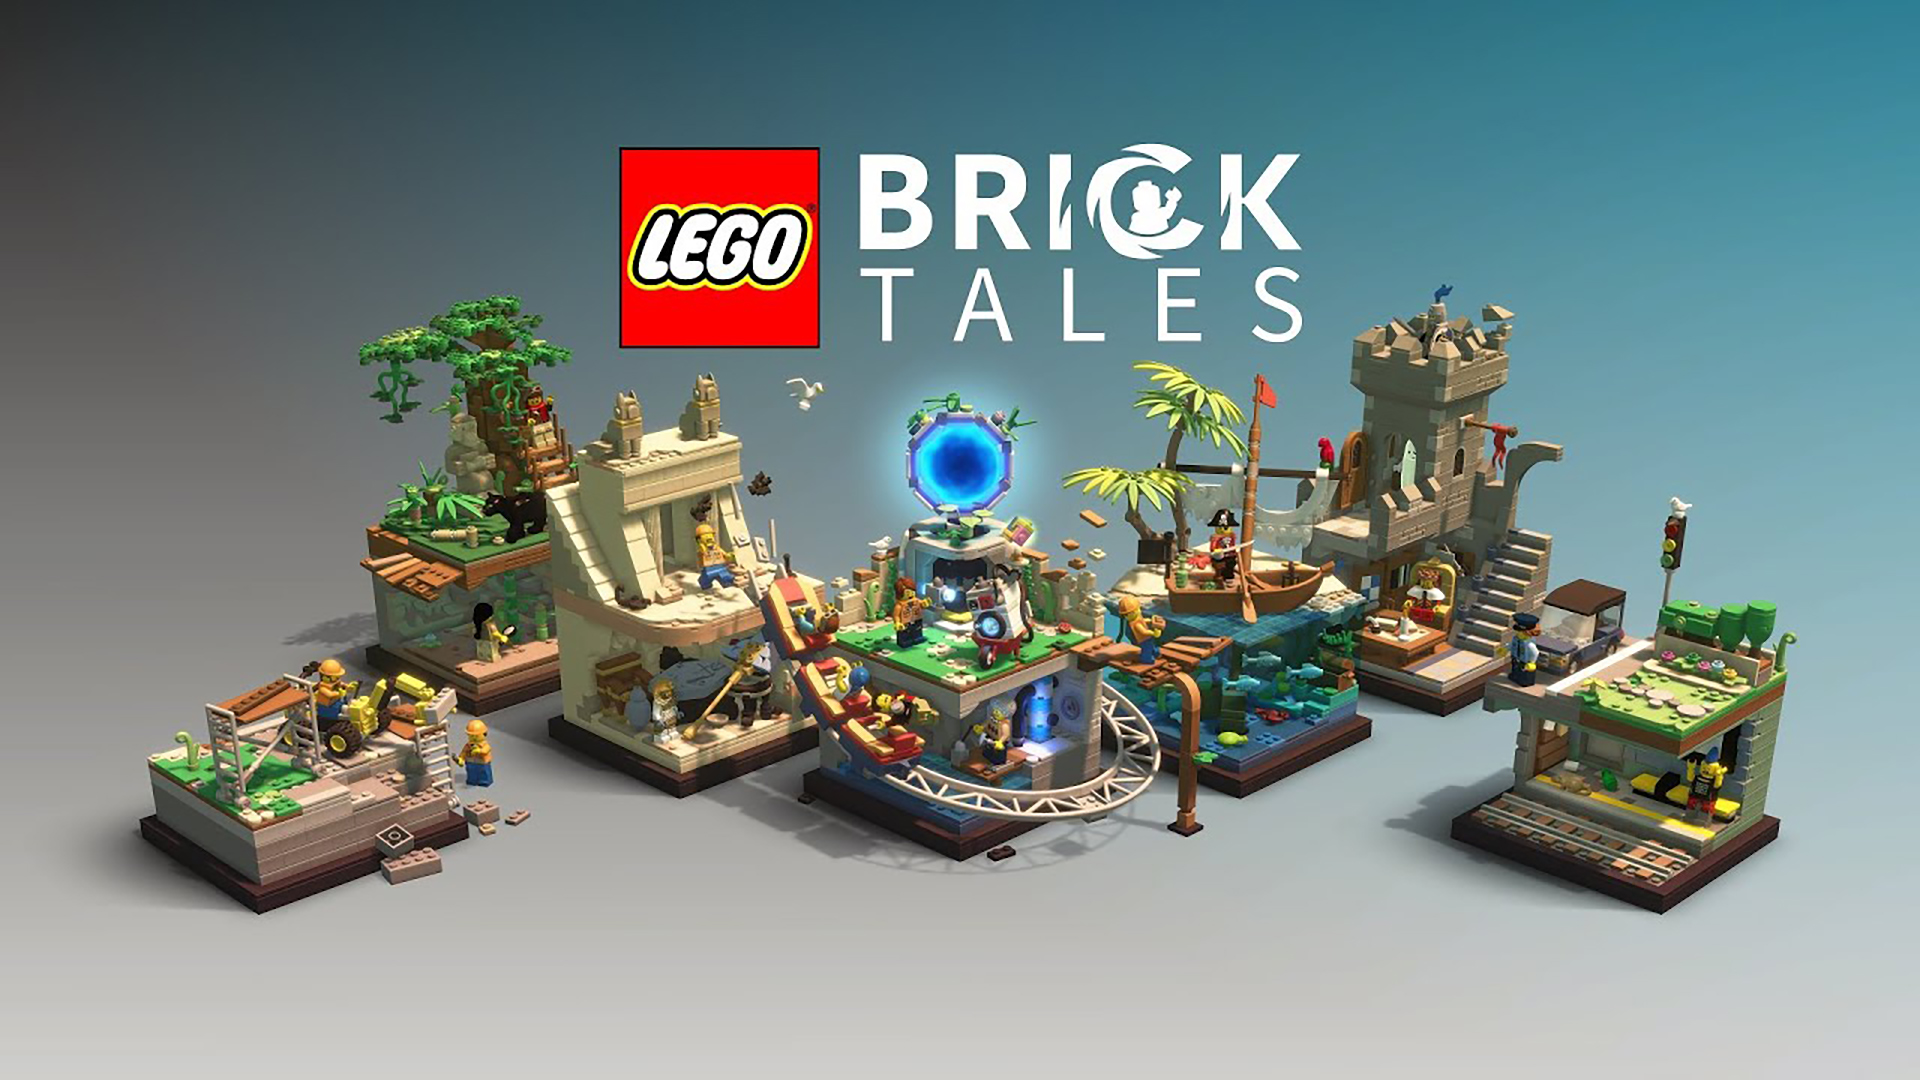 LEGO Bricktales จะวางจำหน่ายในช่วงไตรมาสที่ 4 ของปี 2022